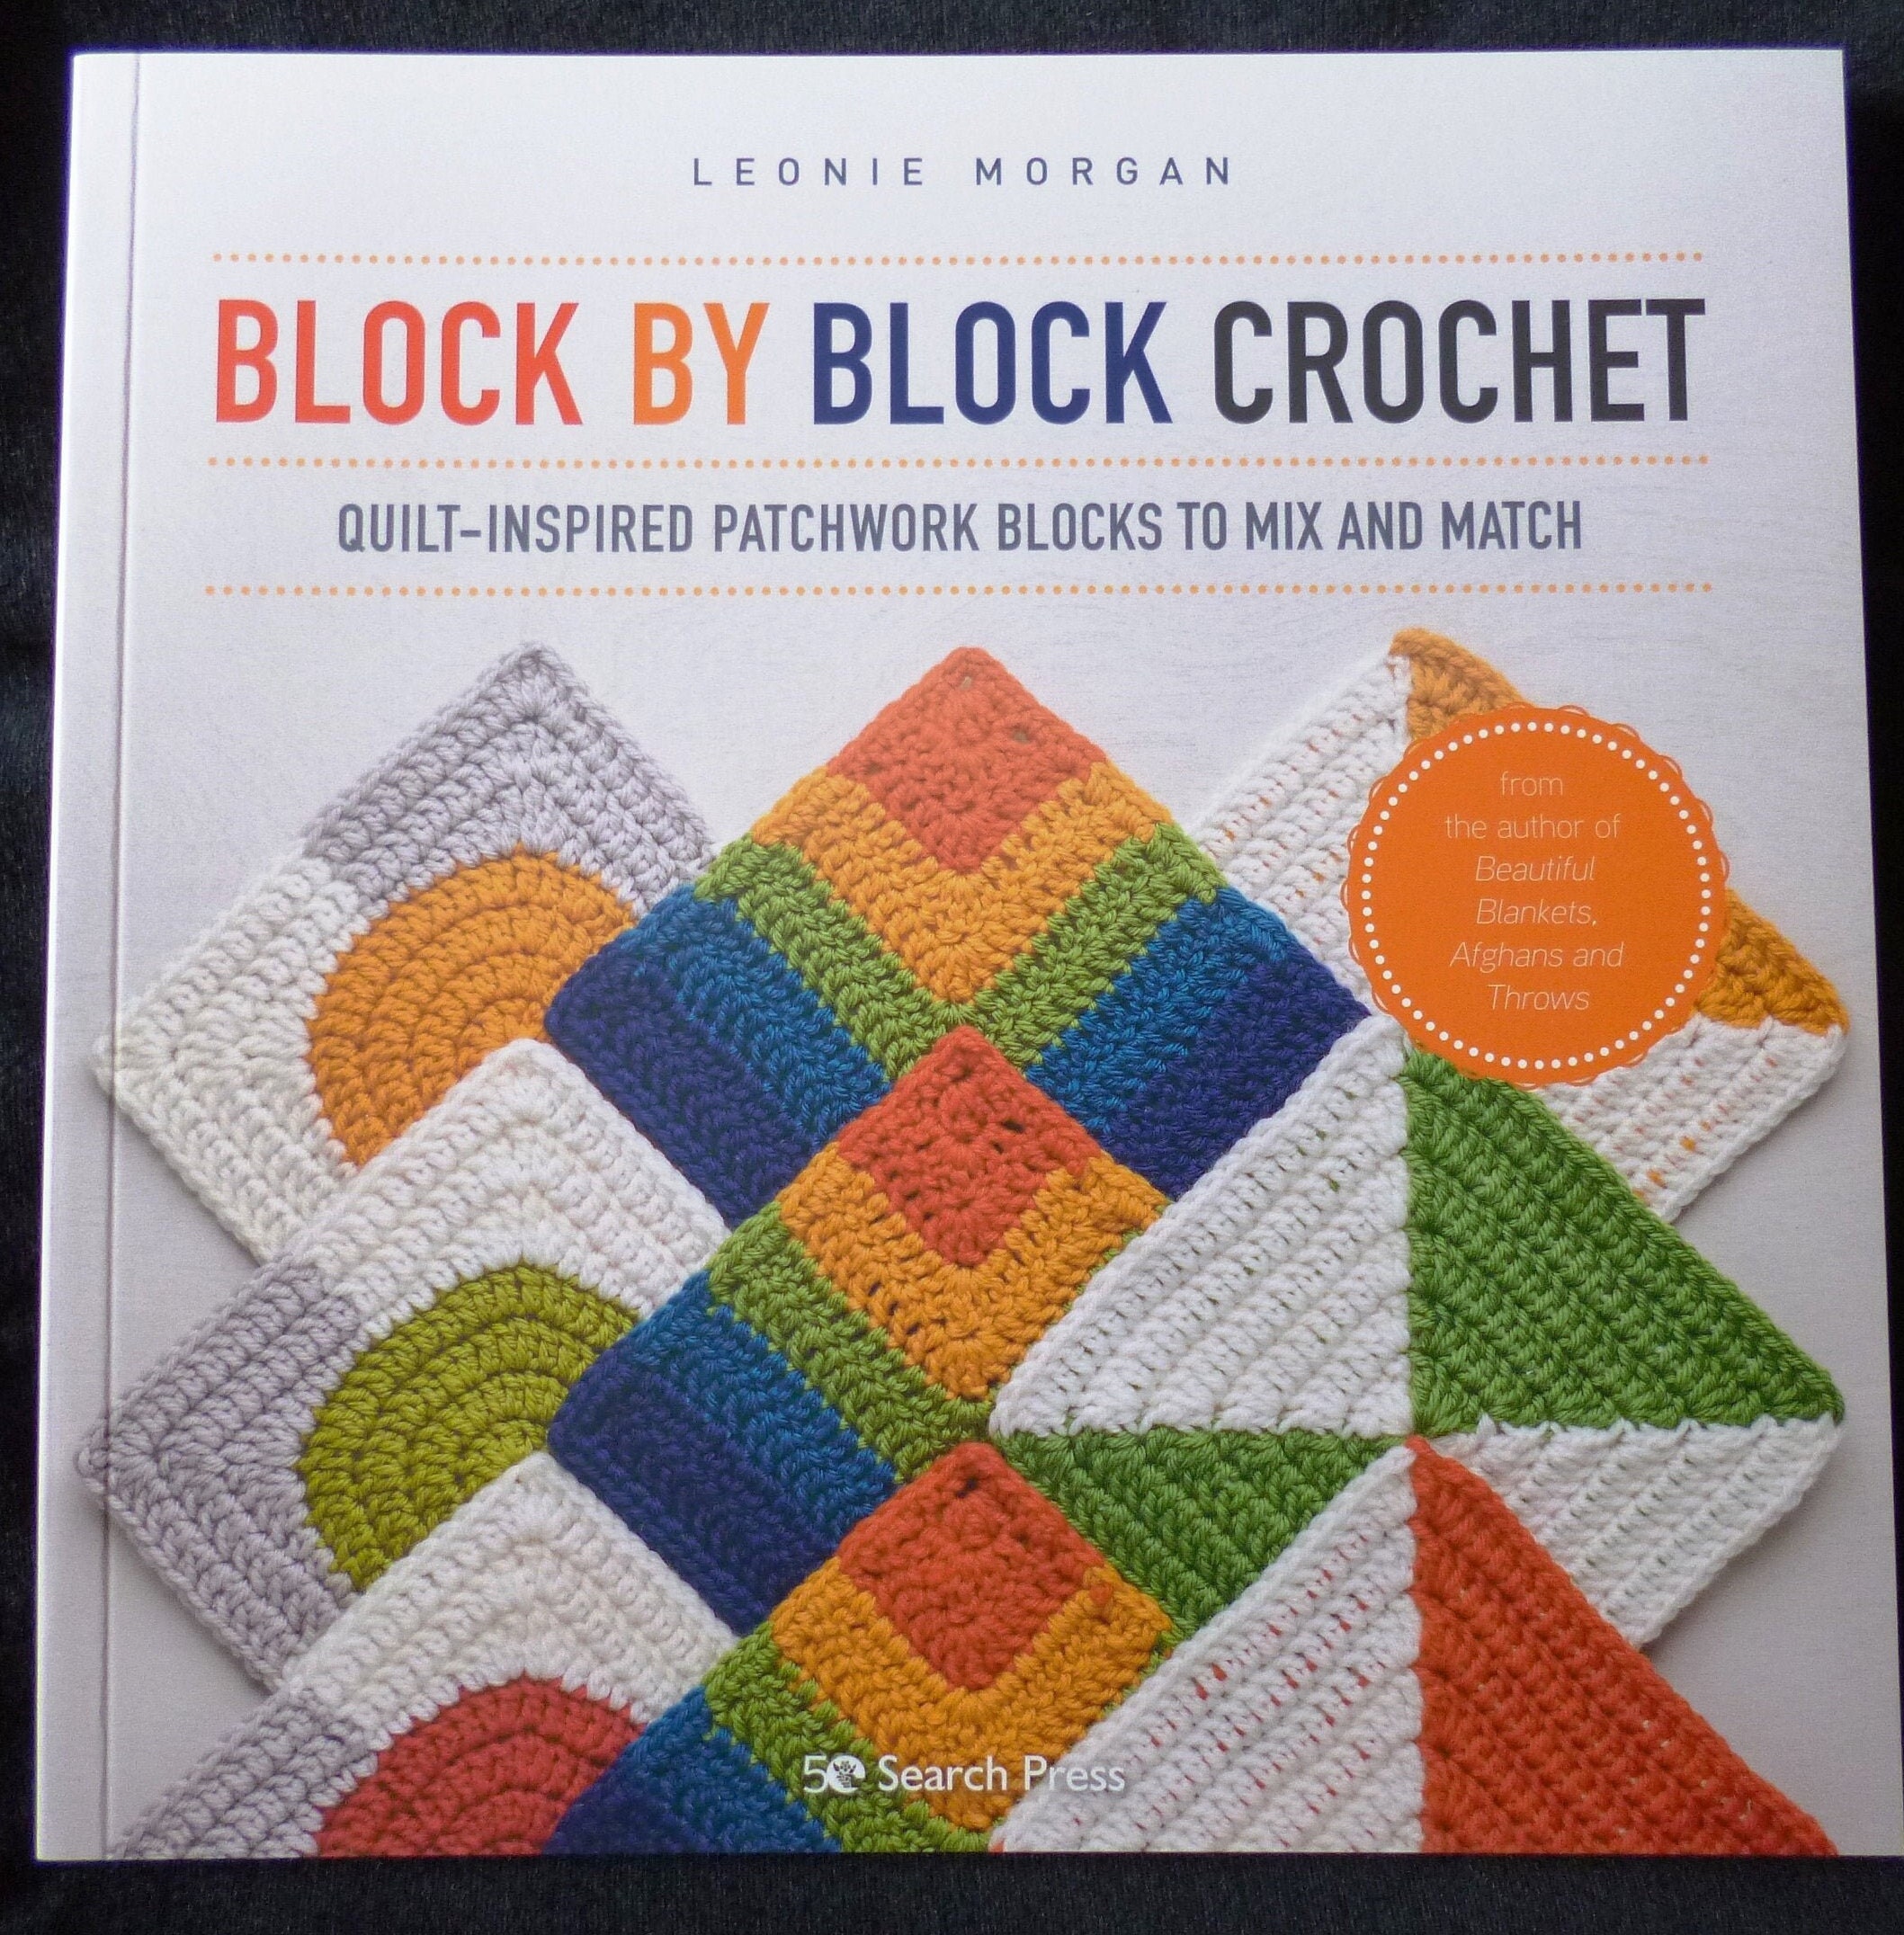 Crochet Books - WoolnHook by Leonie Morgan